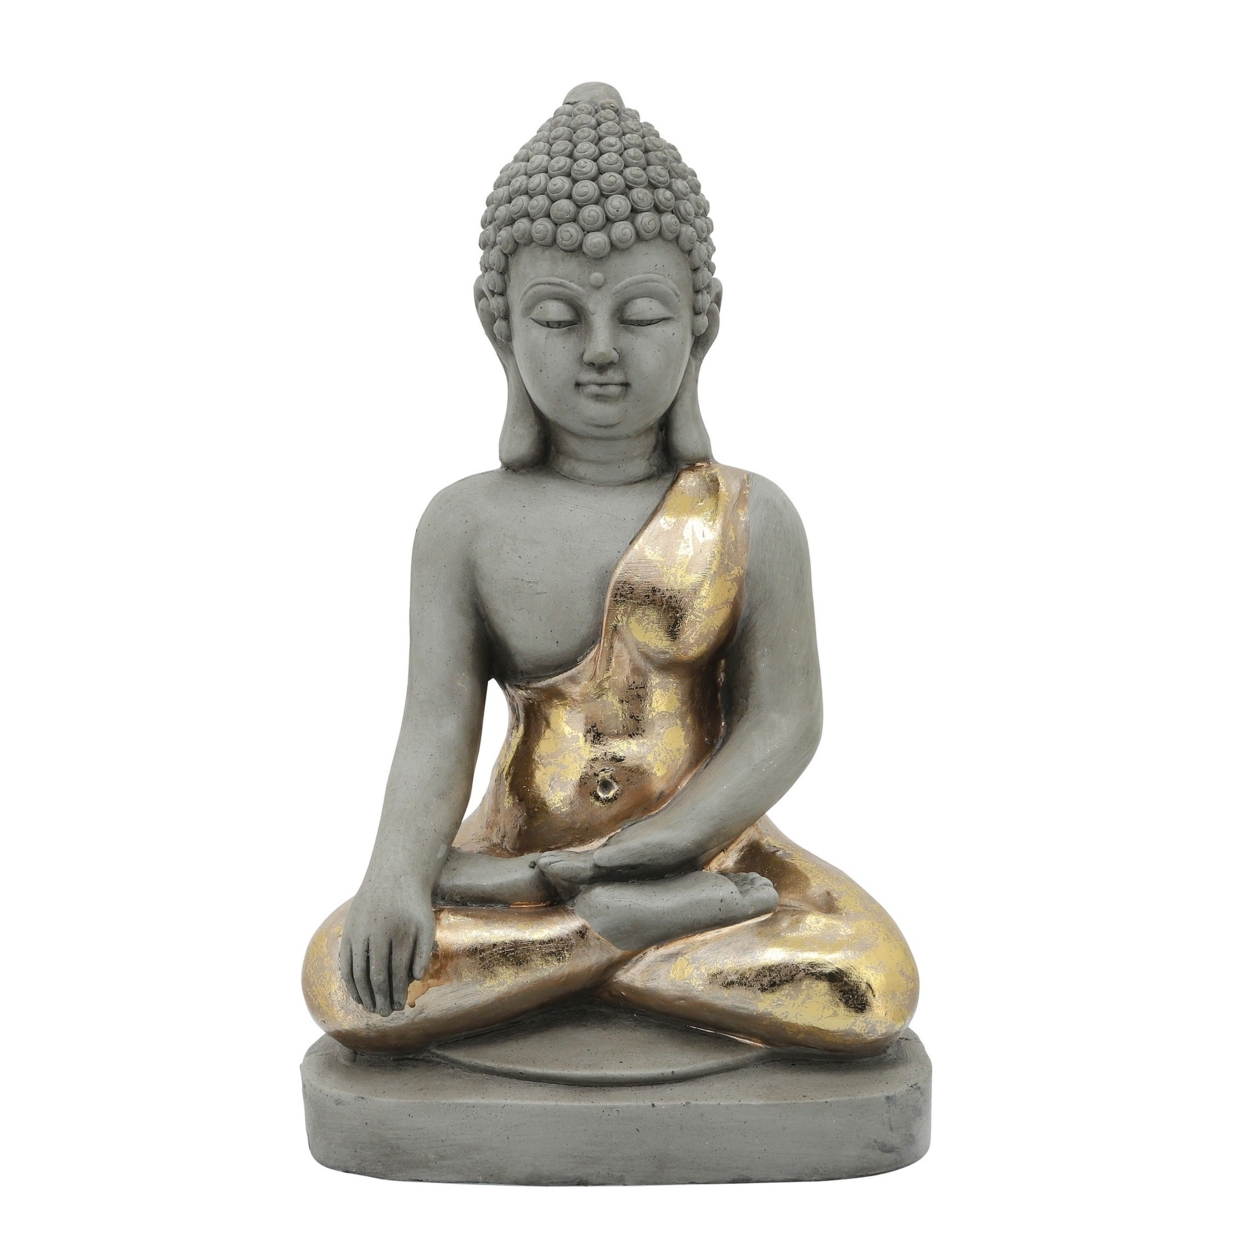 Sitting Buddha Design Resin Accent Decor, Gray- Saltoro Sherpi